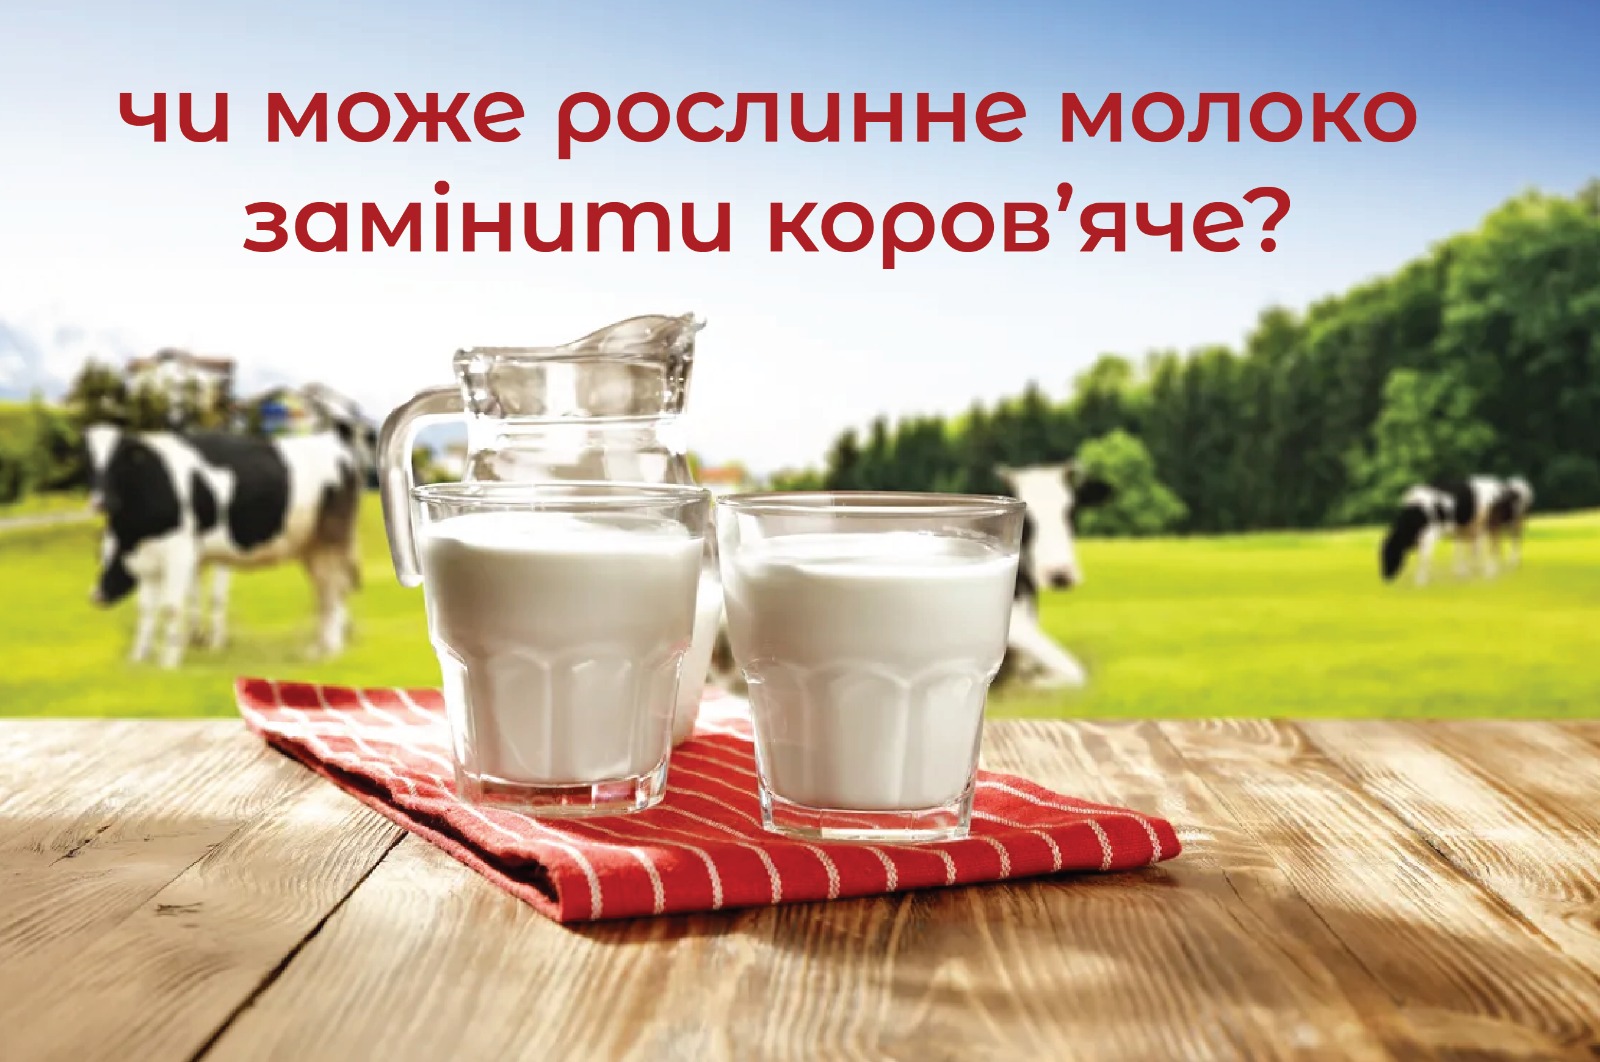 На зображенні склянки наповнені молоком які розміщені на фоні корів на пасовищі, у верхній частині підпис: Чи може рослинне молоко замінити коров’яче?